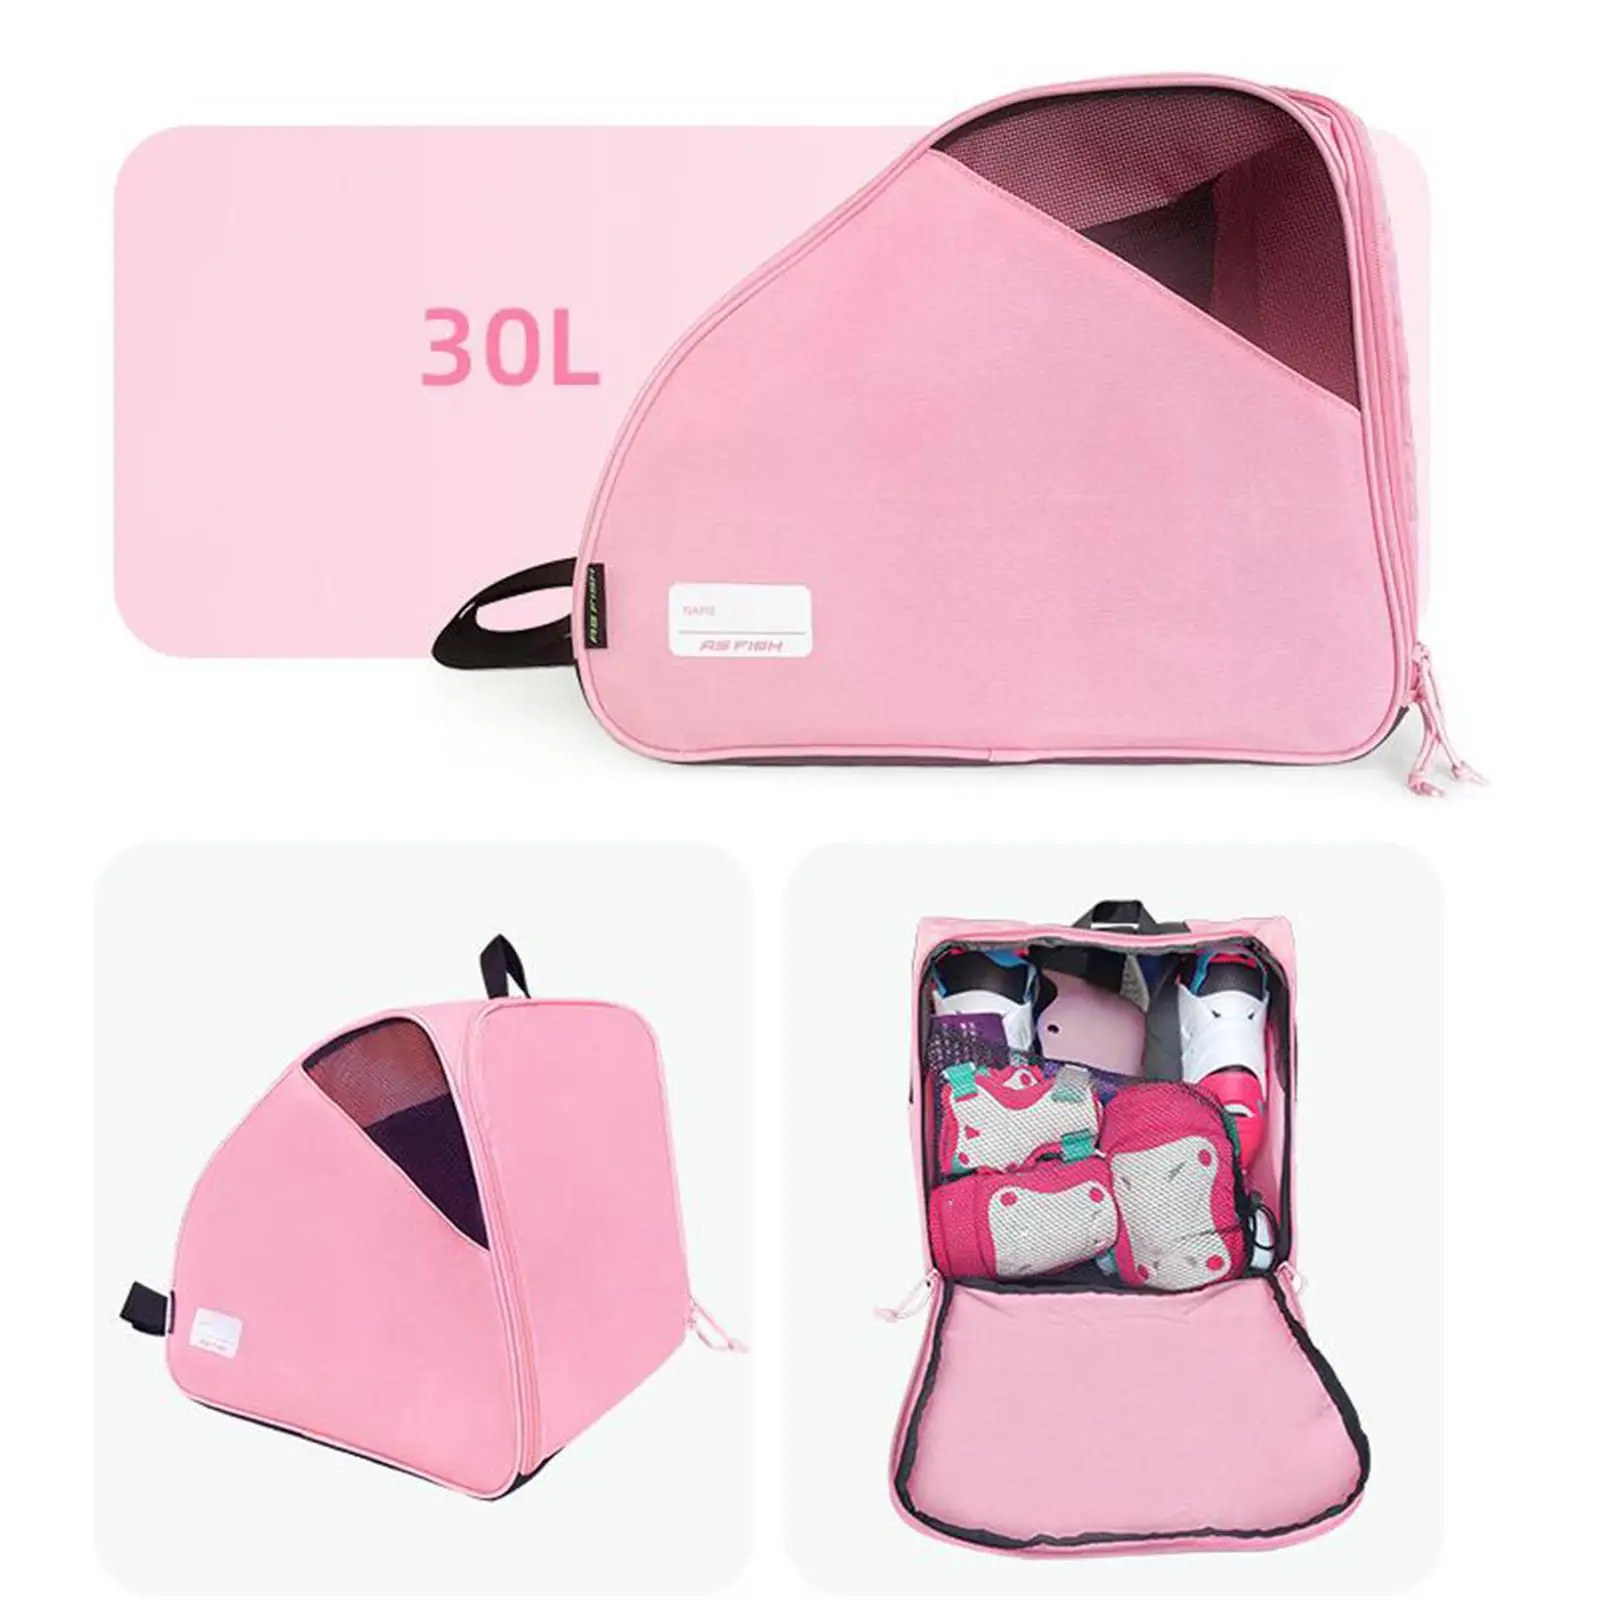 Roller Skate Bag with Carry Handle and Adjustable Shoulder Strap Skating Bag